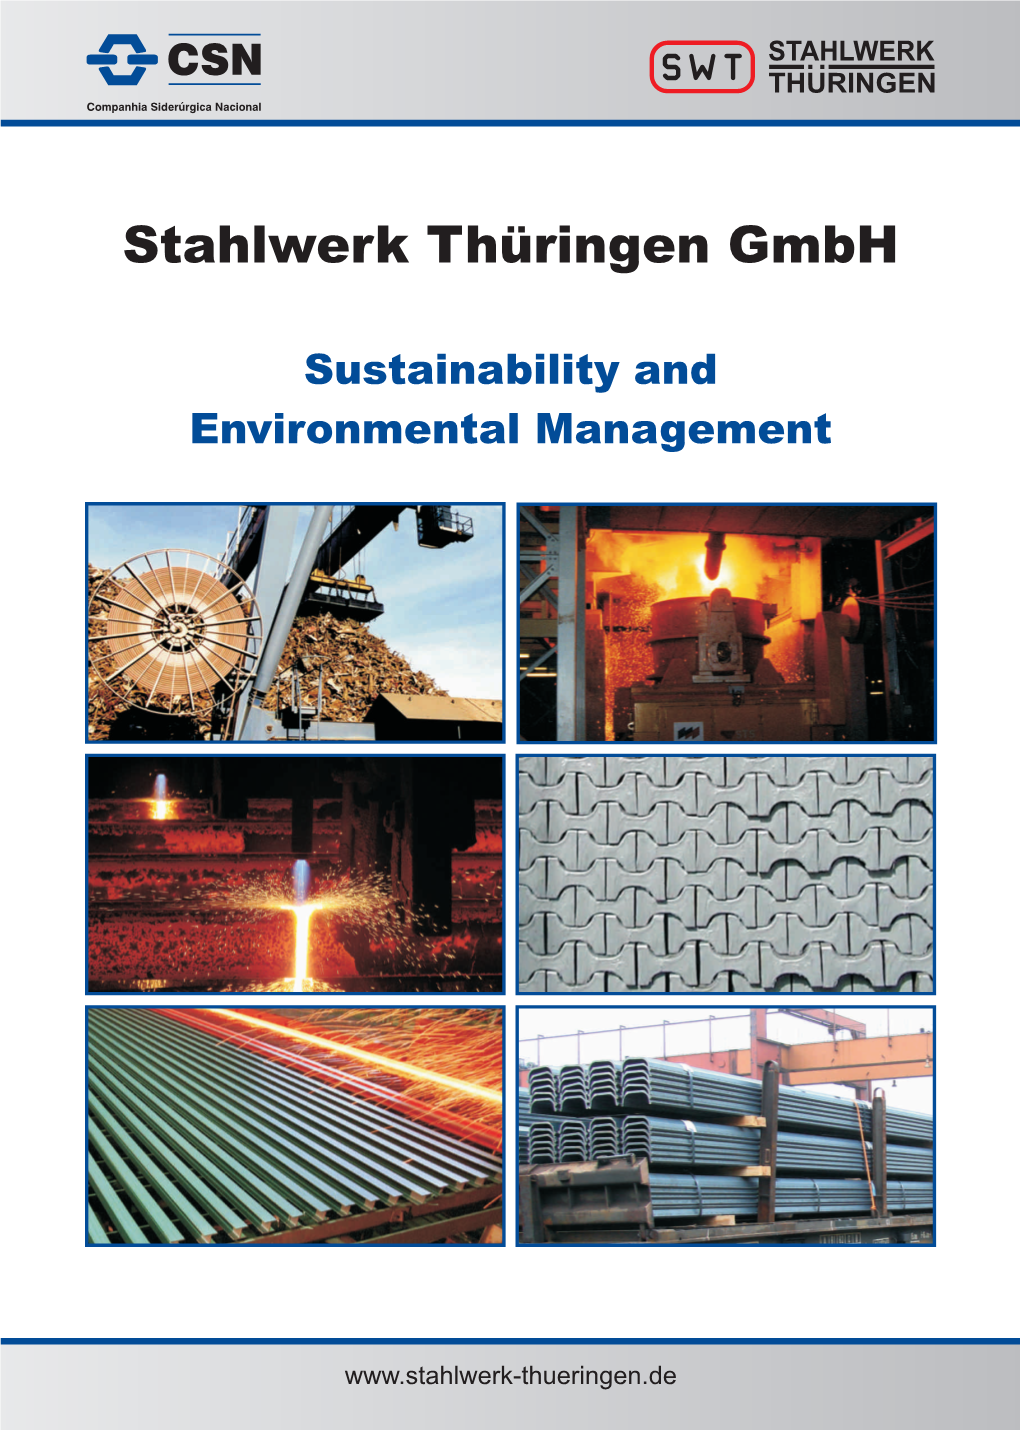 Stahlwerk Thüringen Gmbh